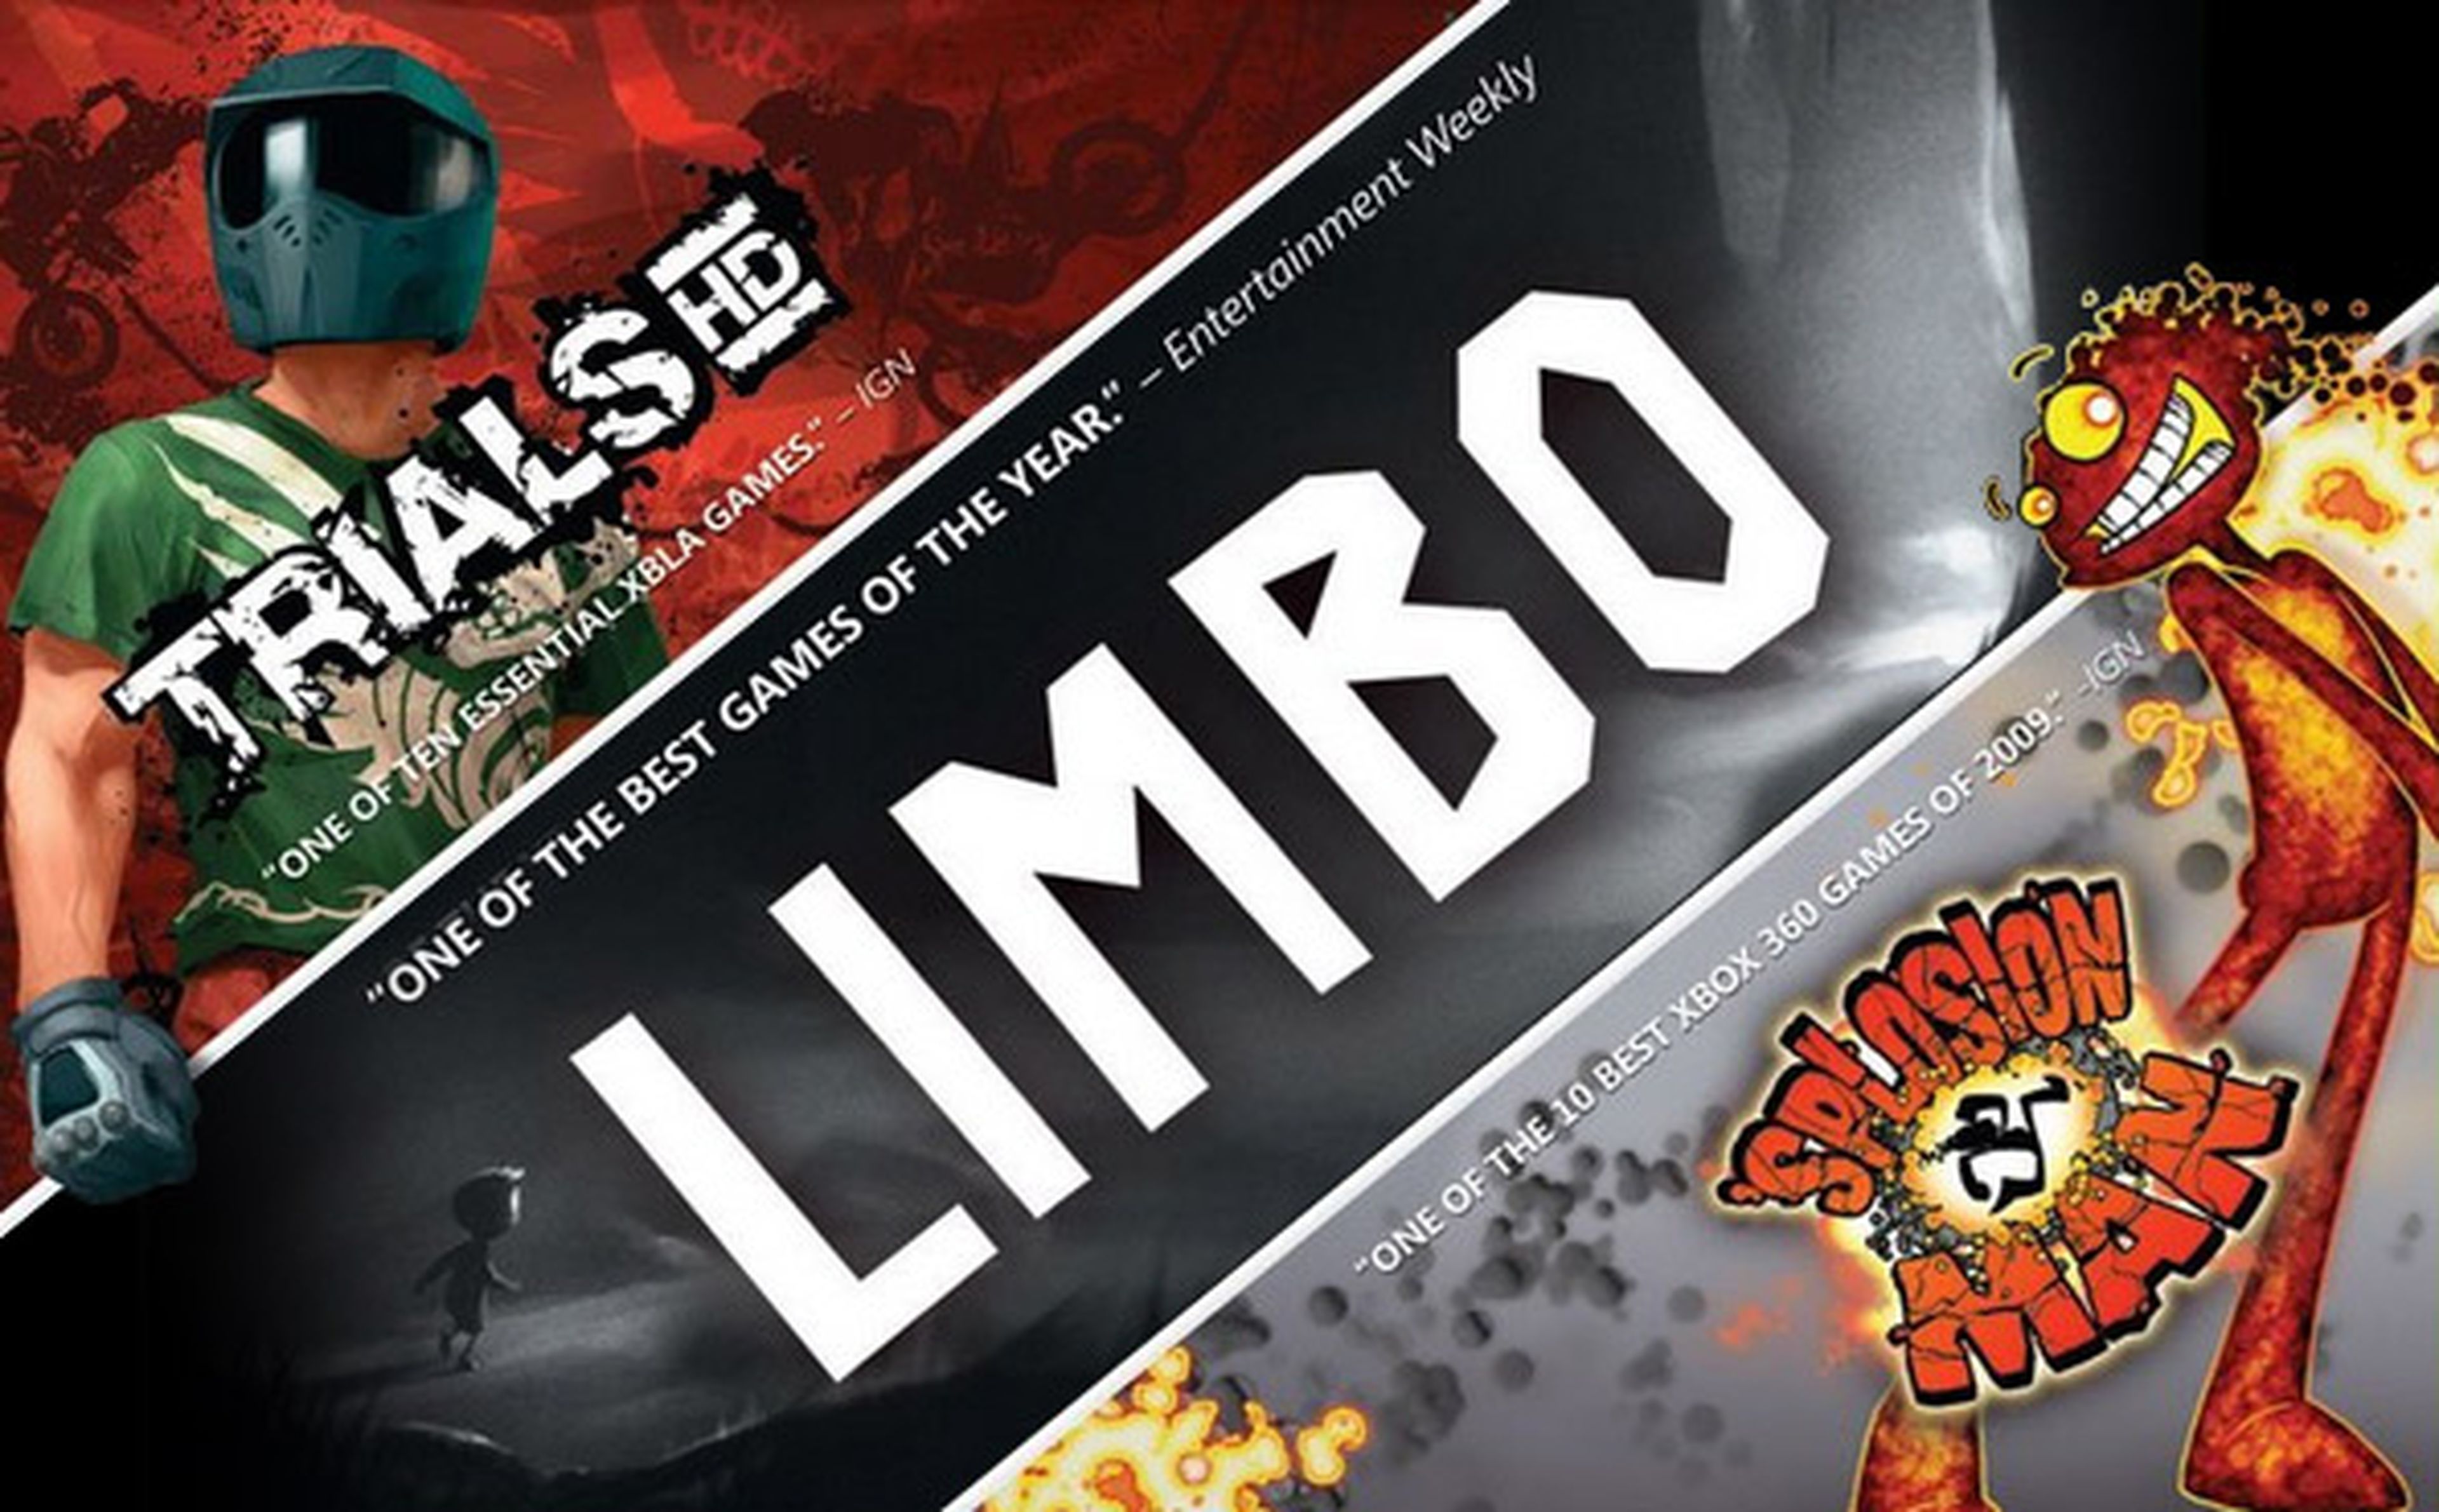 Limbo, Trials HD y 'Splosion Man en pack